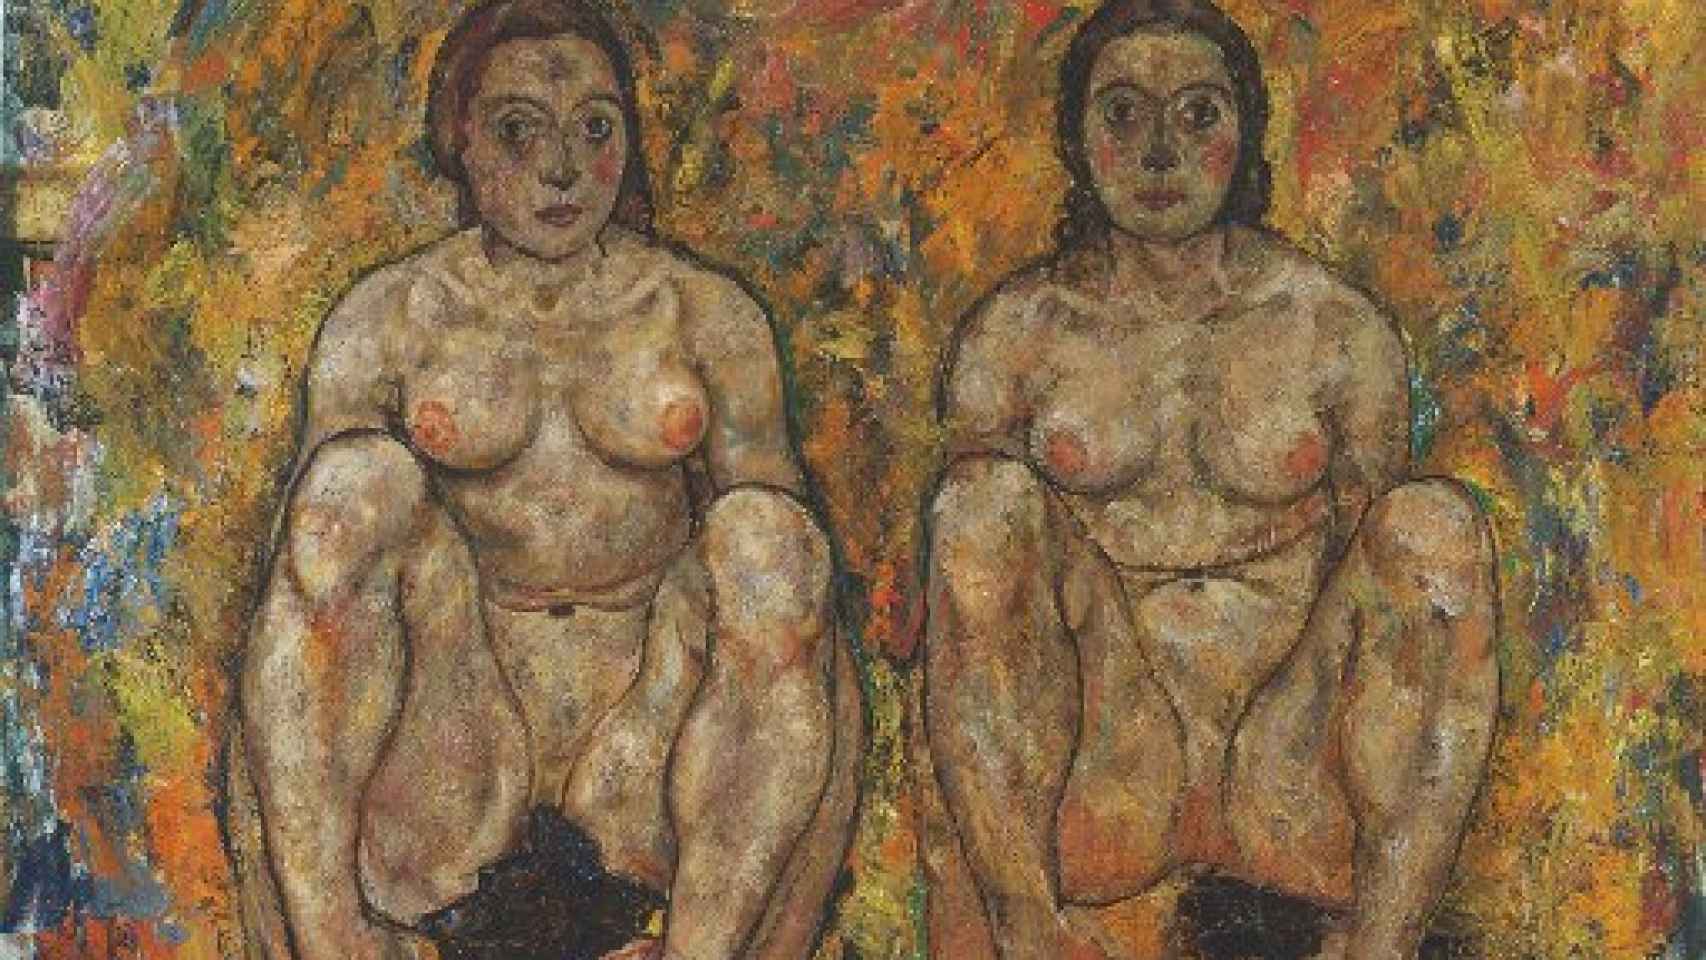 Image: Viena se entrega al erotismo de Egon Schiele